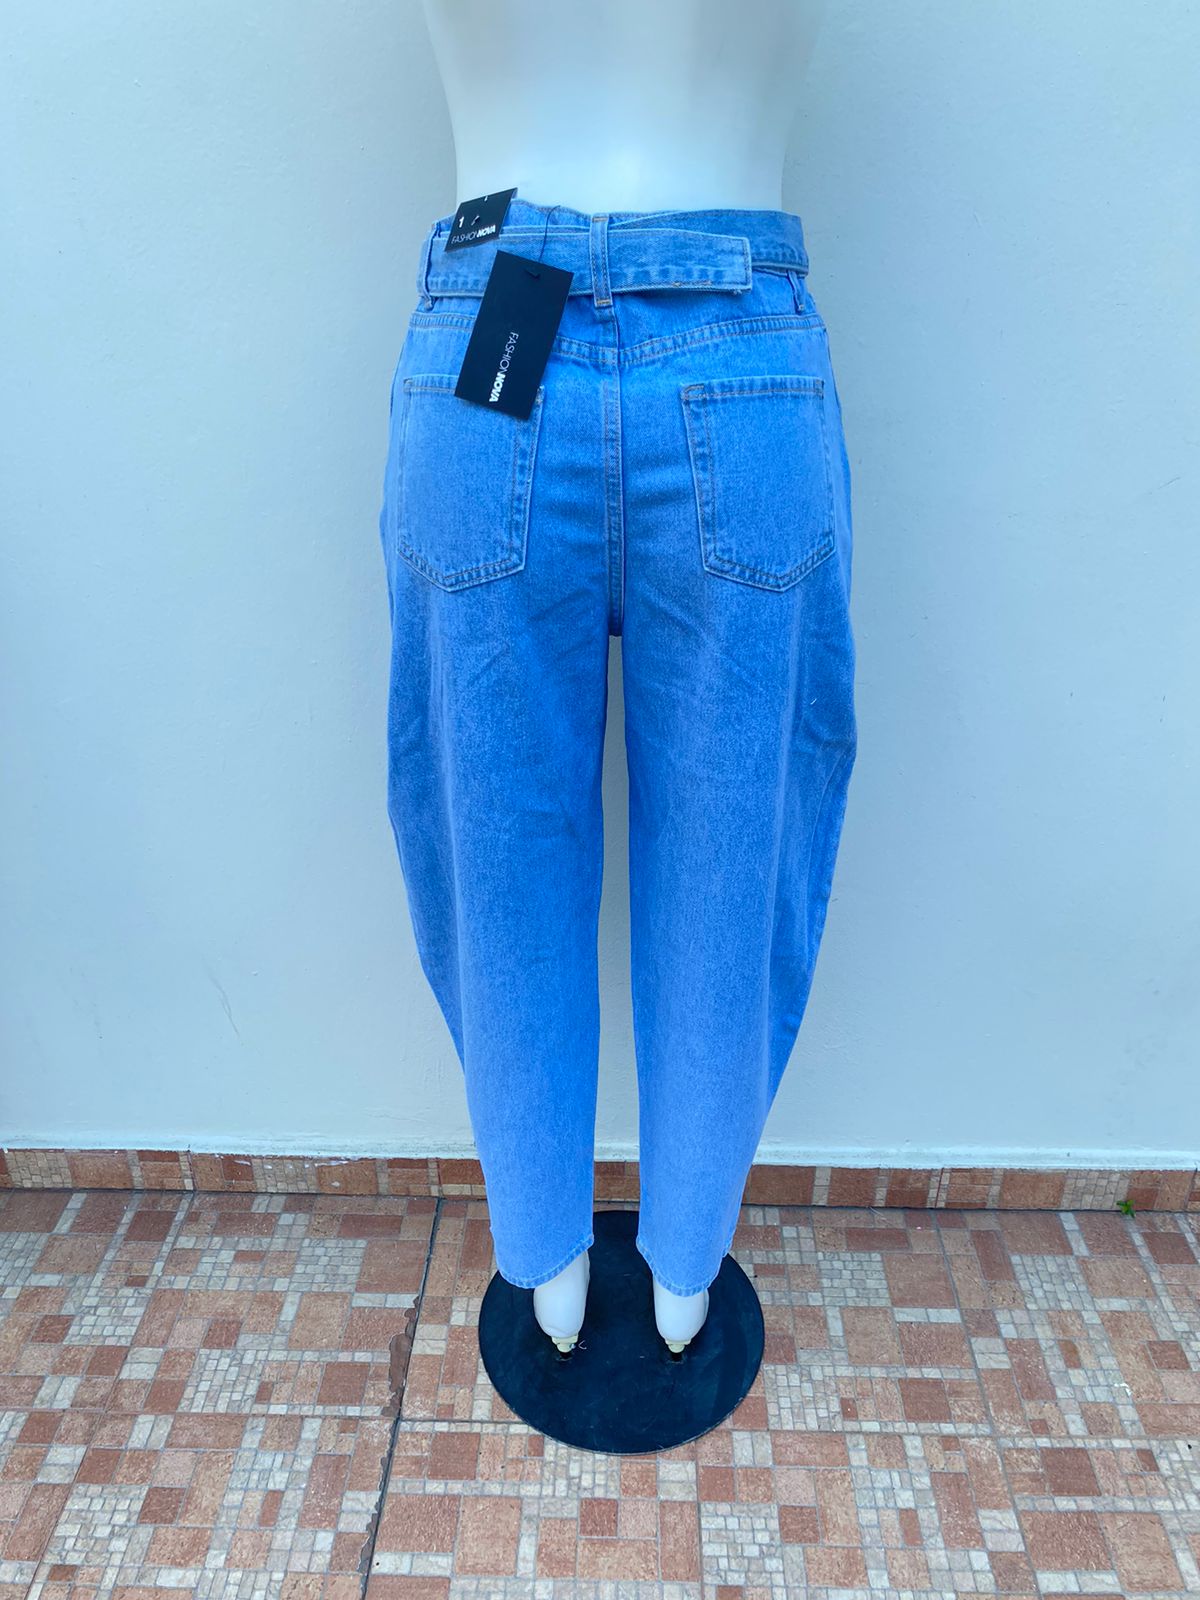 Pantalón Jean Fashion Nova original azul claro liso, BALLOON, con correa adicional.